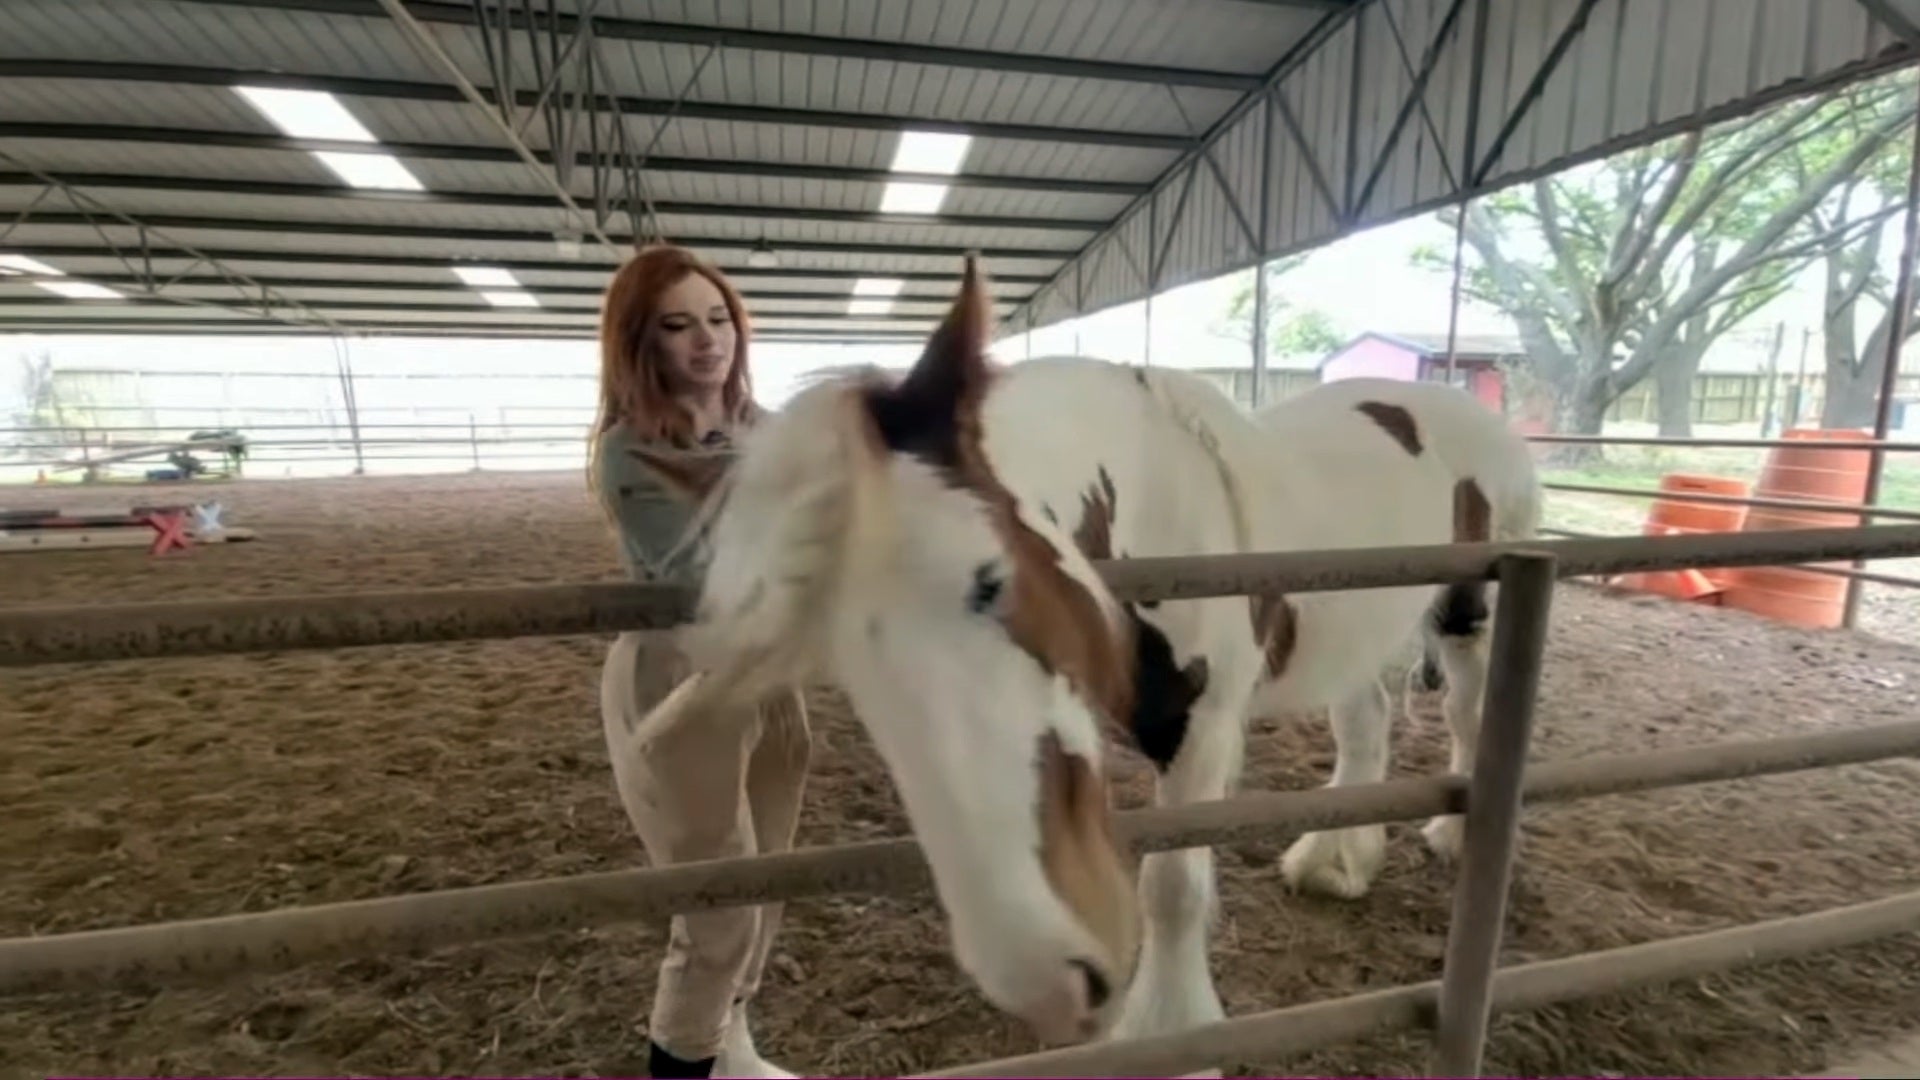 Caitlin Siragusa rasca detrás de la oreja de un caballo en un video de YouTube en abril de 2023.